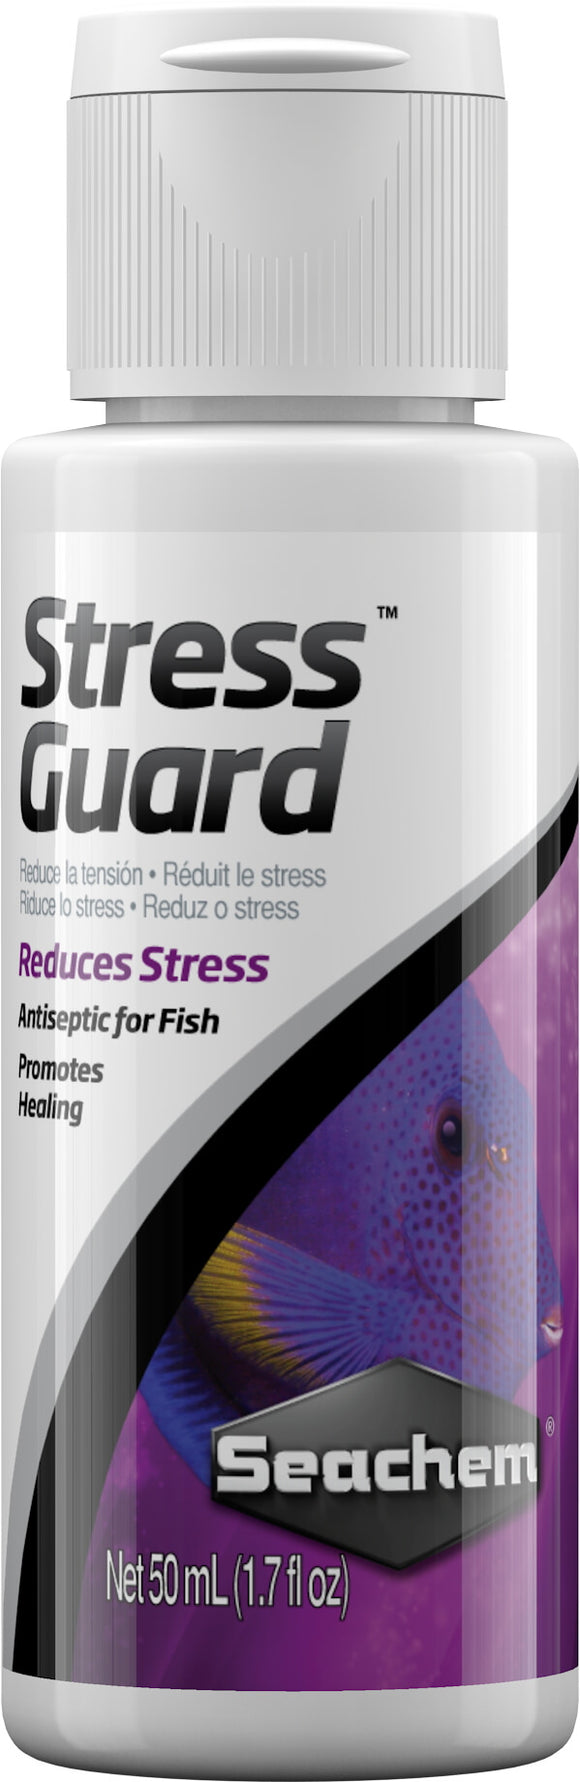 Seachem   StressGuard - 50ml